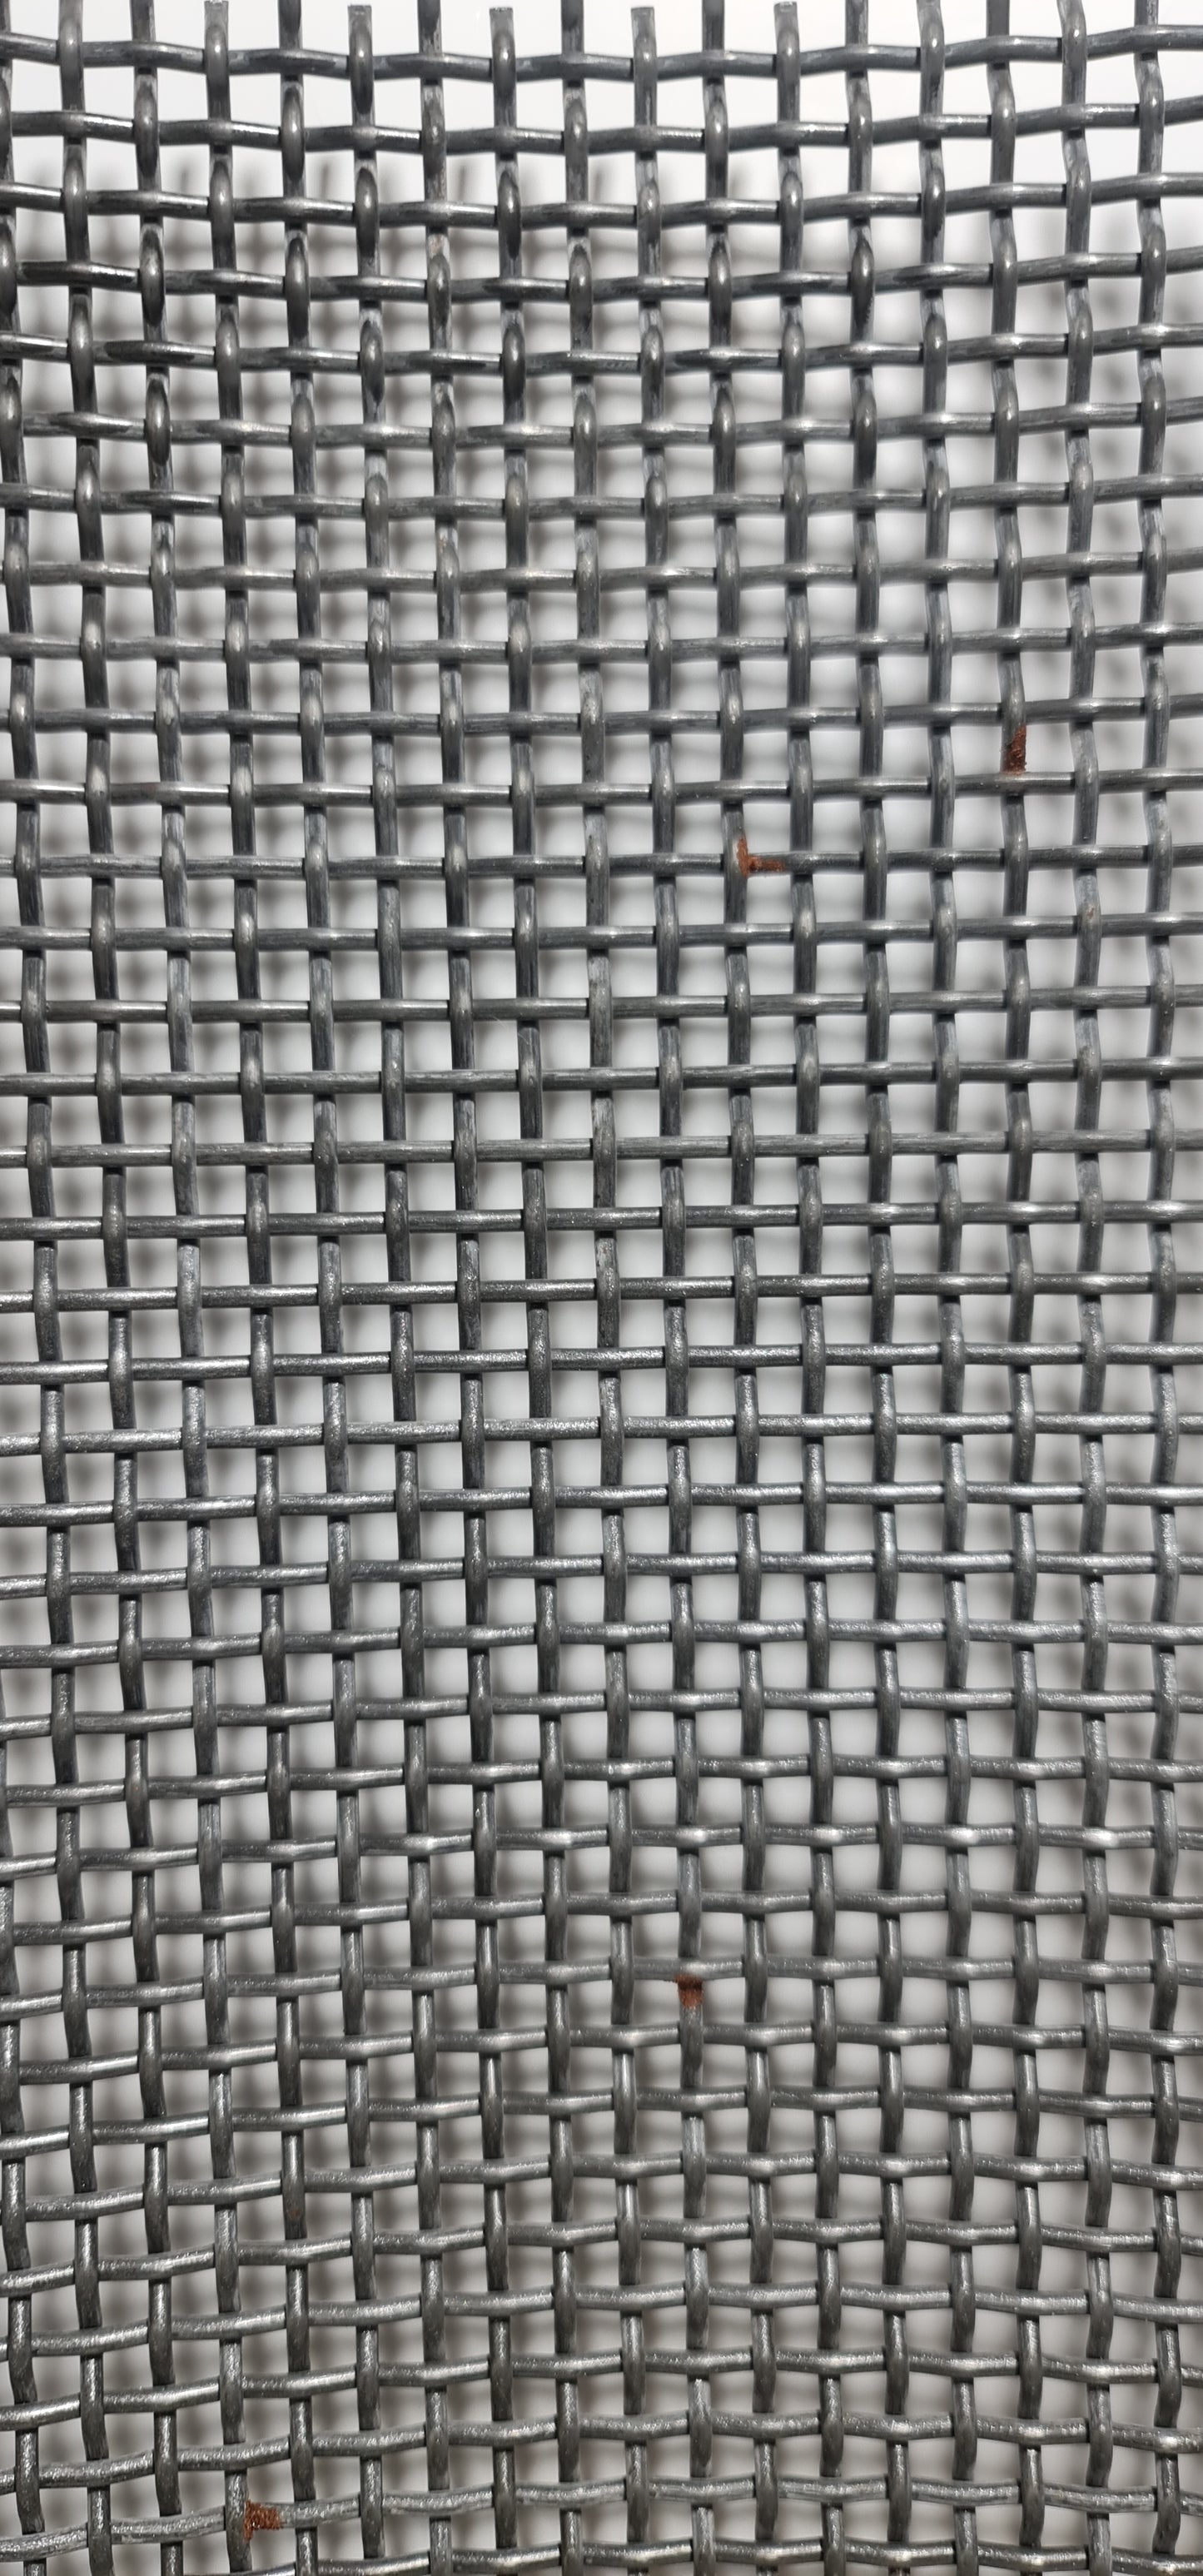 Fabric sieve 995x396x2.2 MW 3.5 mm